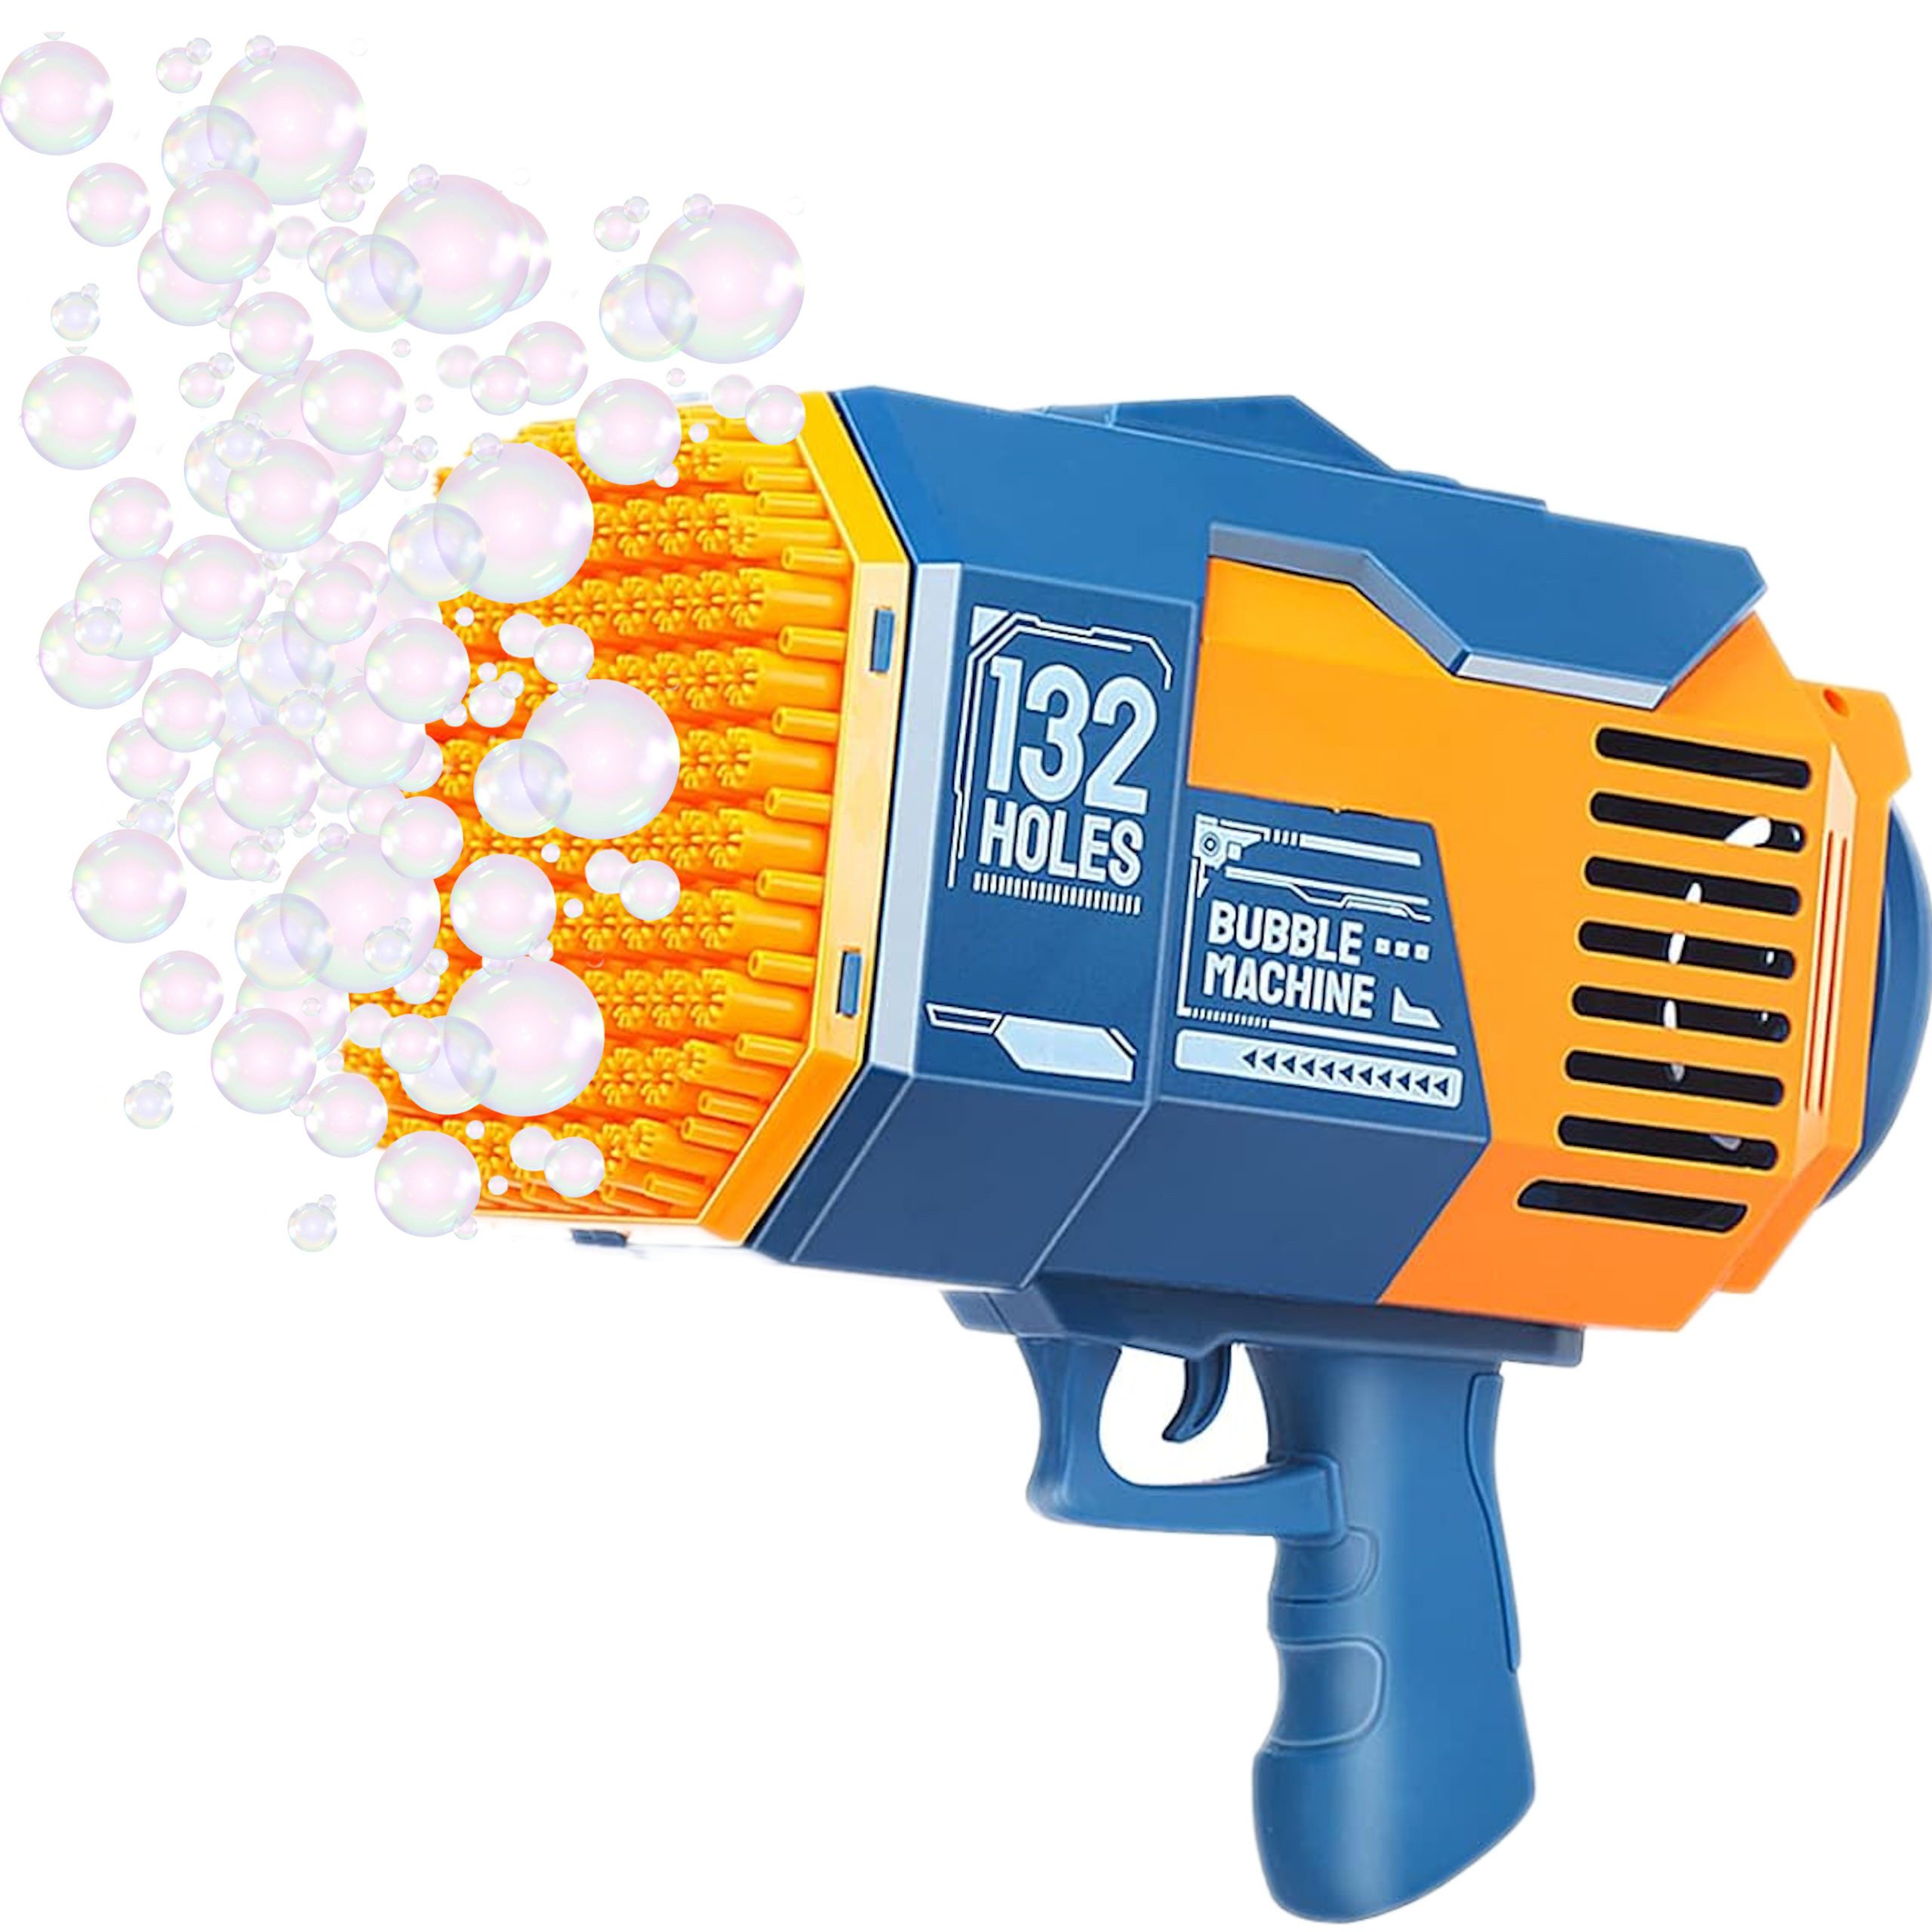 COIL Seifenblasenpistole Seifenblasenmaschine, Automatischer Bubble Machine, 1000+ Blasen/Minute, LED, USB-Kabel, 132 Löcher, 2x100 ml